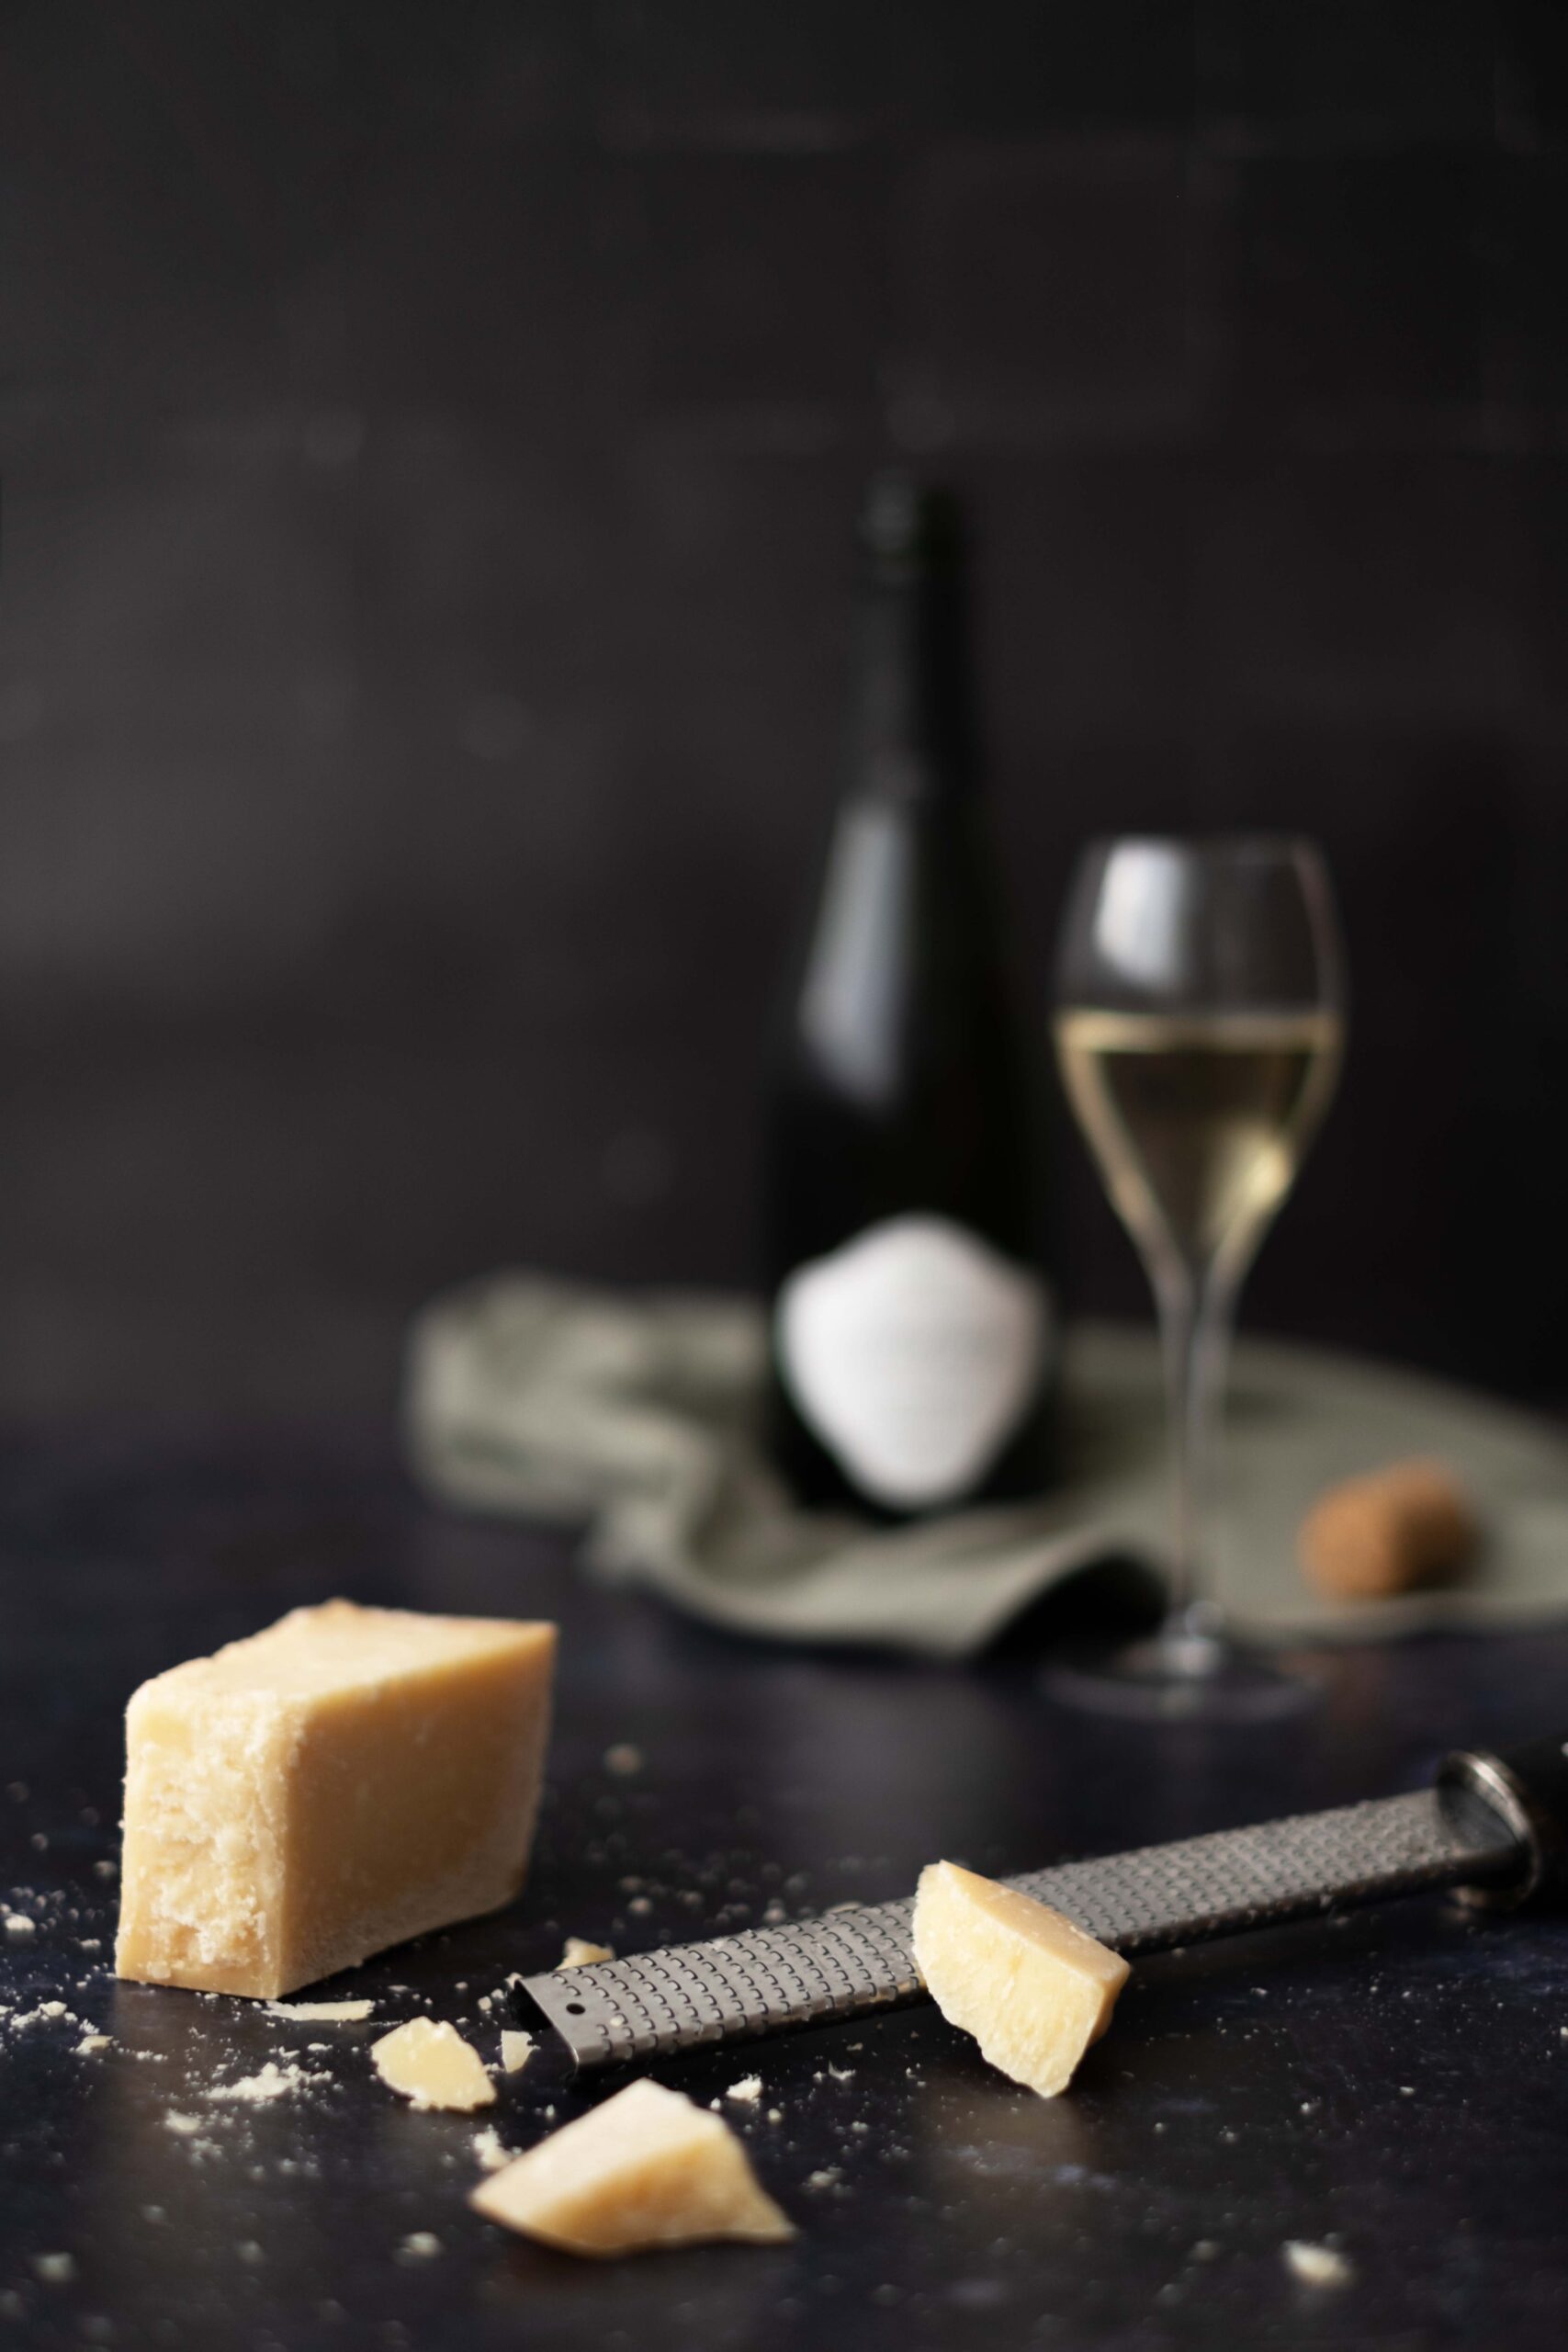 Het huwelijk tussen Champagne en kaas